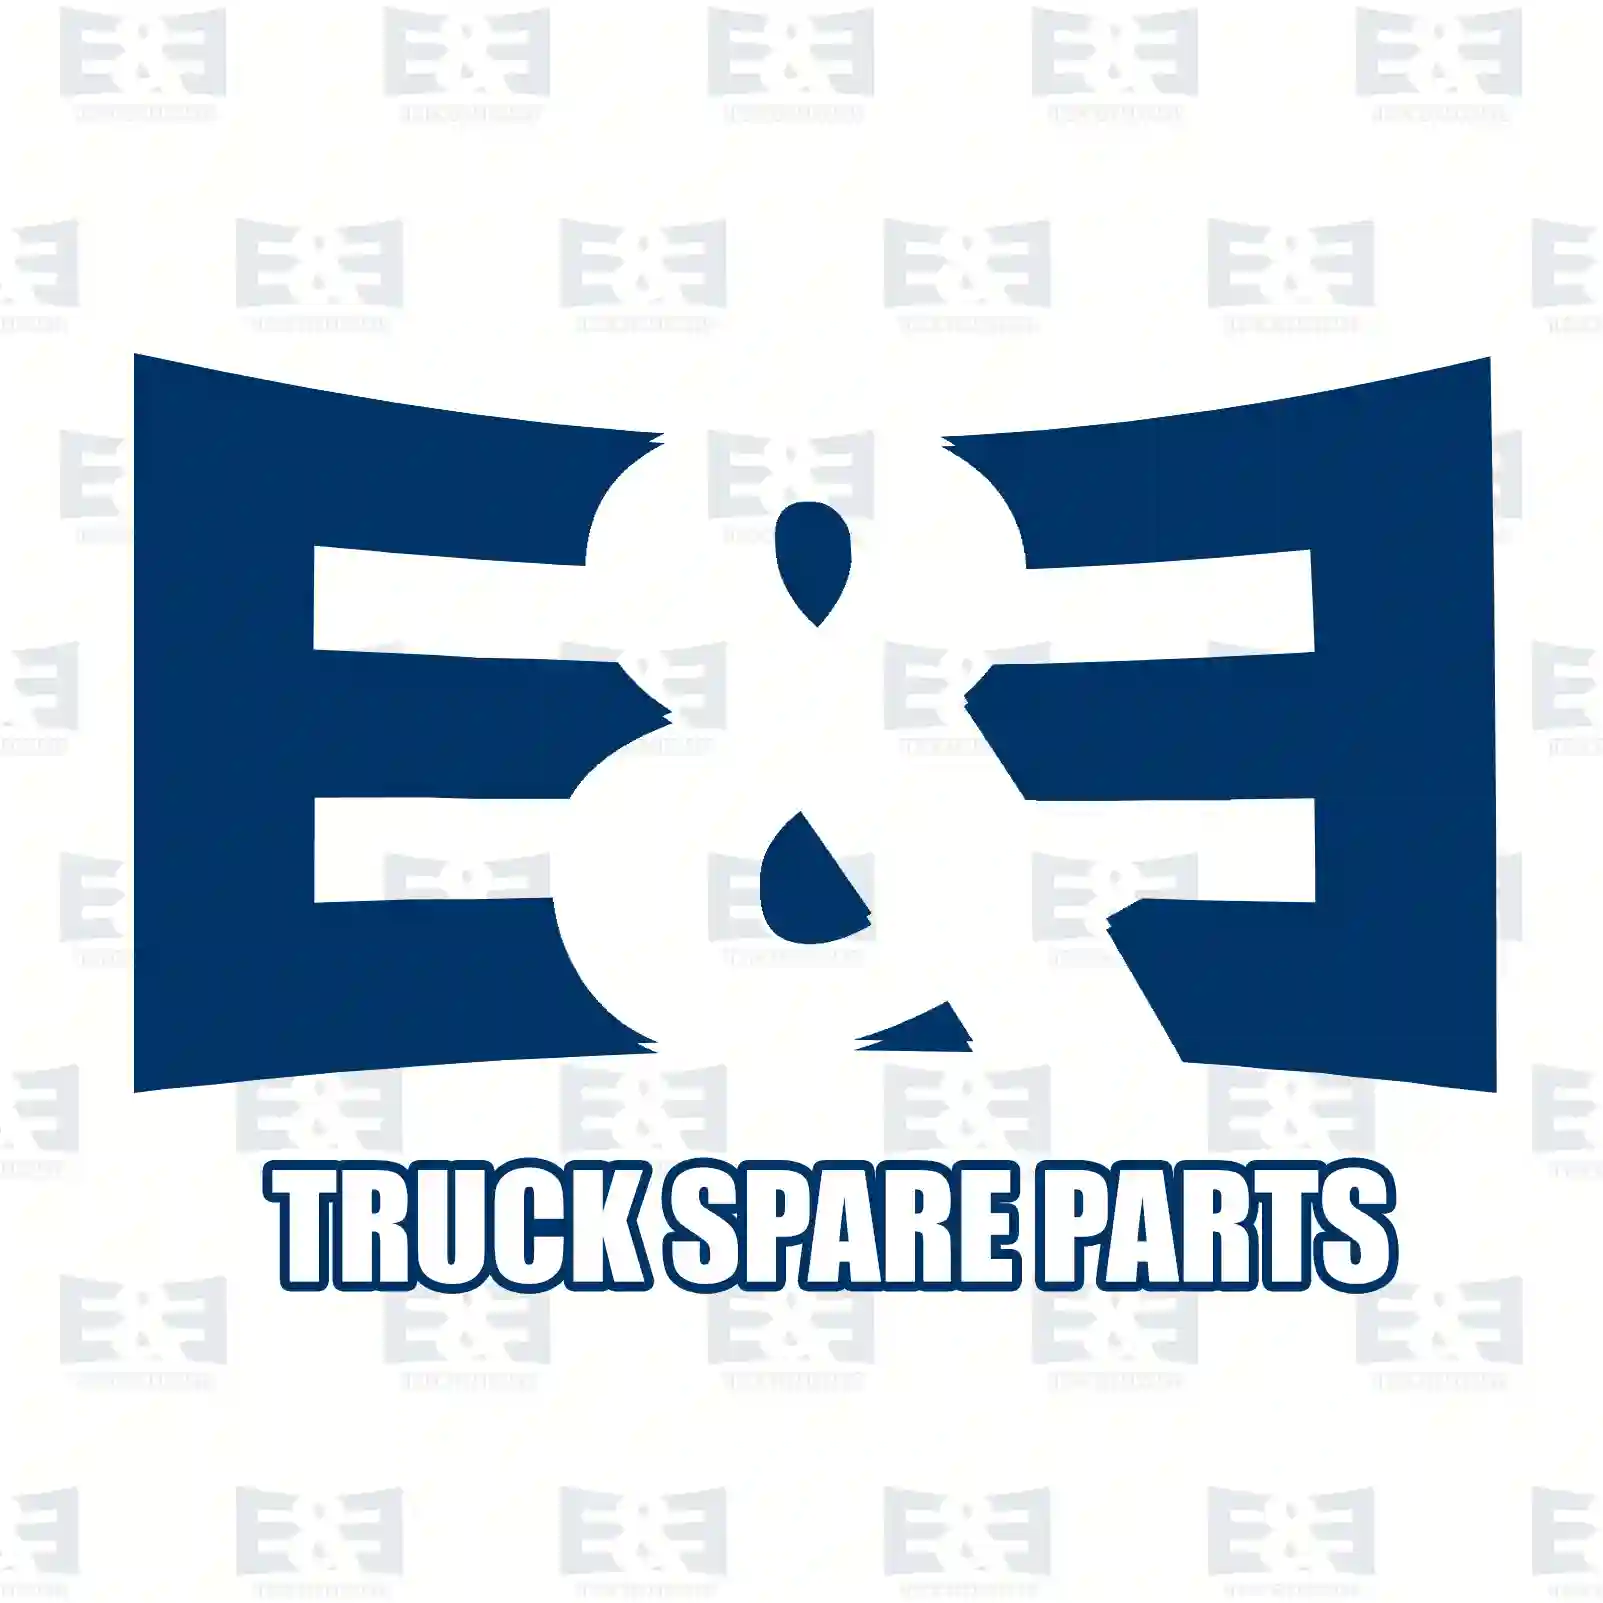 Propeller shaft, 2E2276737, 500391640 ||  2E2276737 E&E Truck Spare Parts | Truck Spare Parts, Auotomotive Spare Parts Propeller shaft, 2E2276737, 500391640 ||  2E2276737 E&E Truck Spare Parts | Truck Spare Parts, Auotomotive Spare Parts